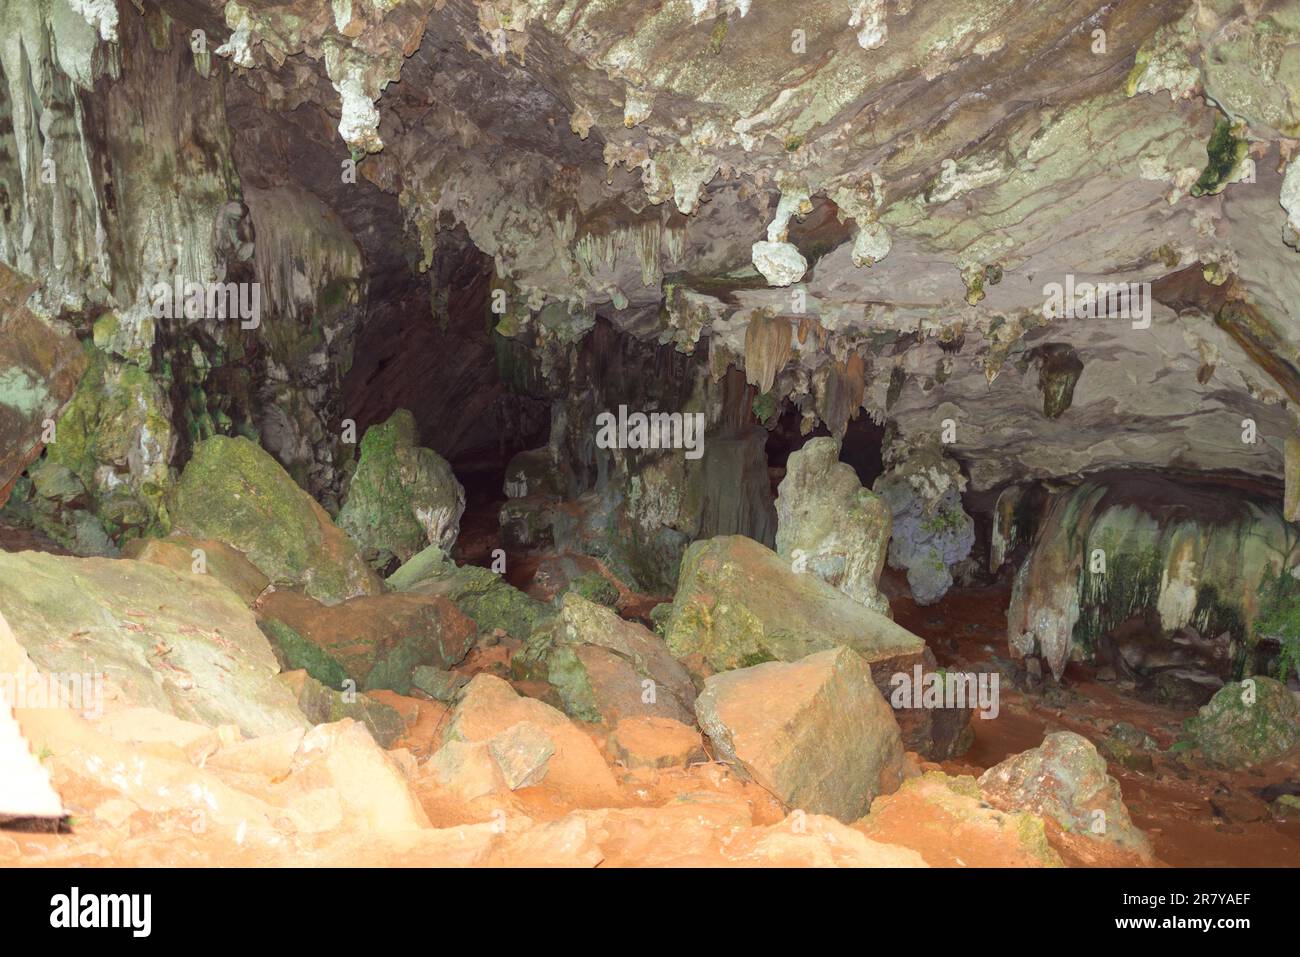 All'interno della grotta dei serpenti Tam Ngu nel parco nazionale di Khao Sok. Ci sono alcuni animali nella grotta come pipistrelli, serpenti e ragni Foto Stock